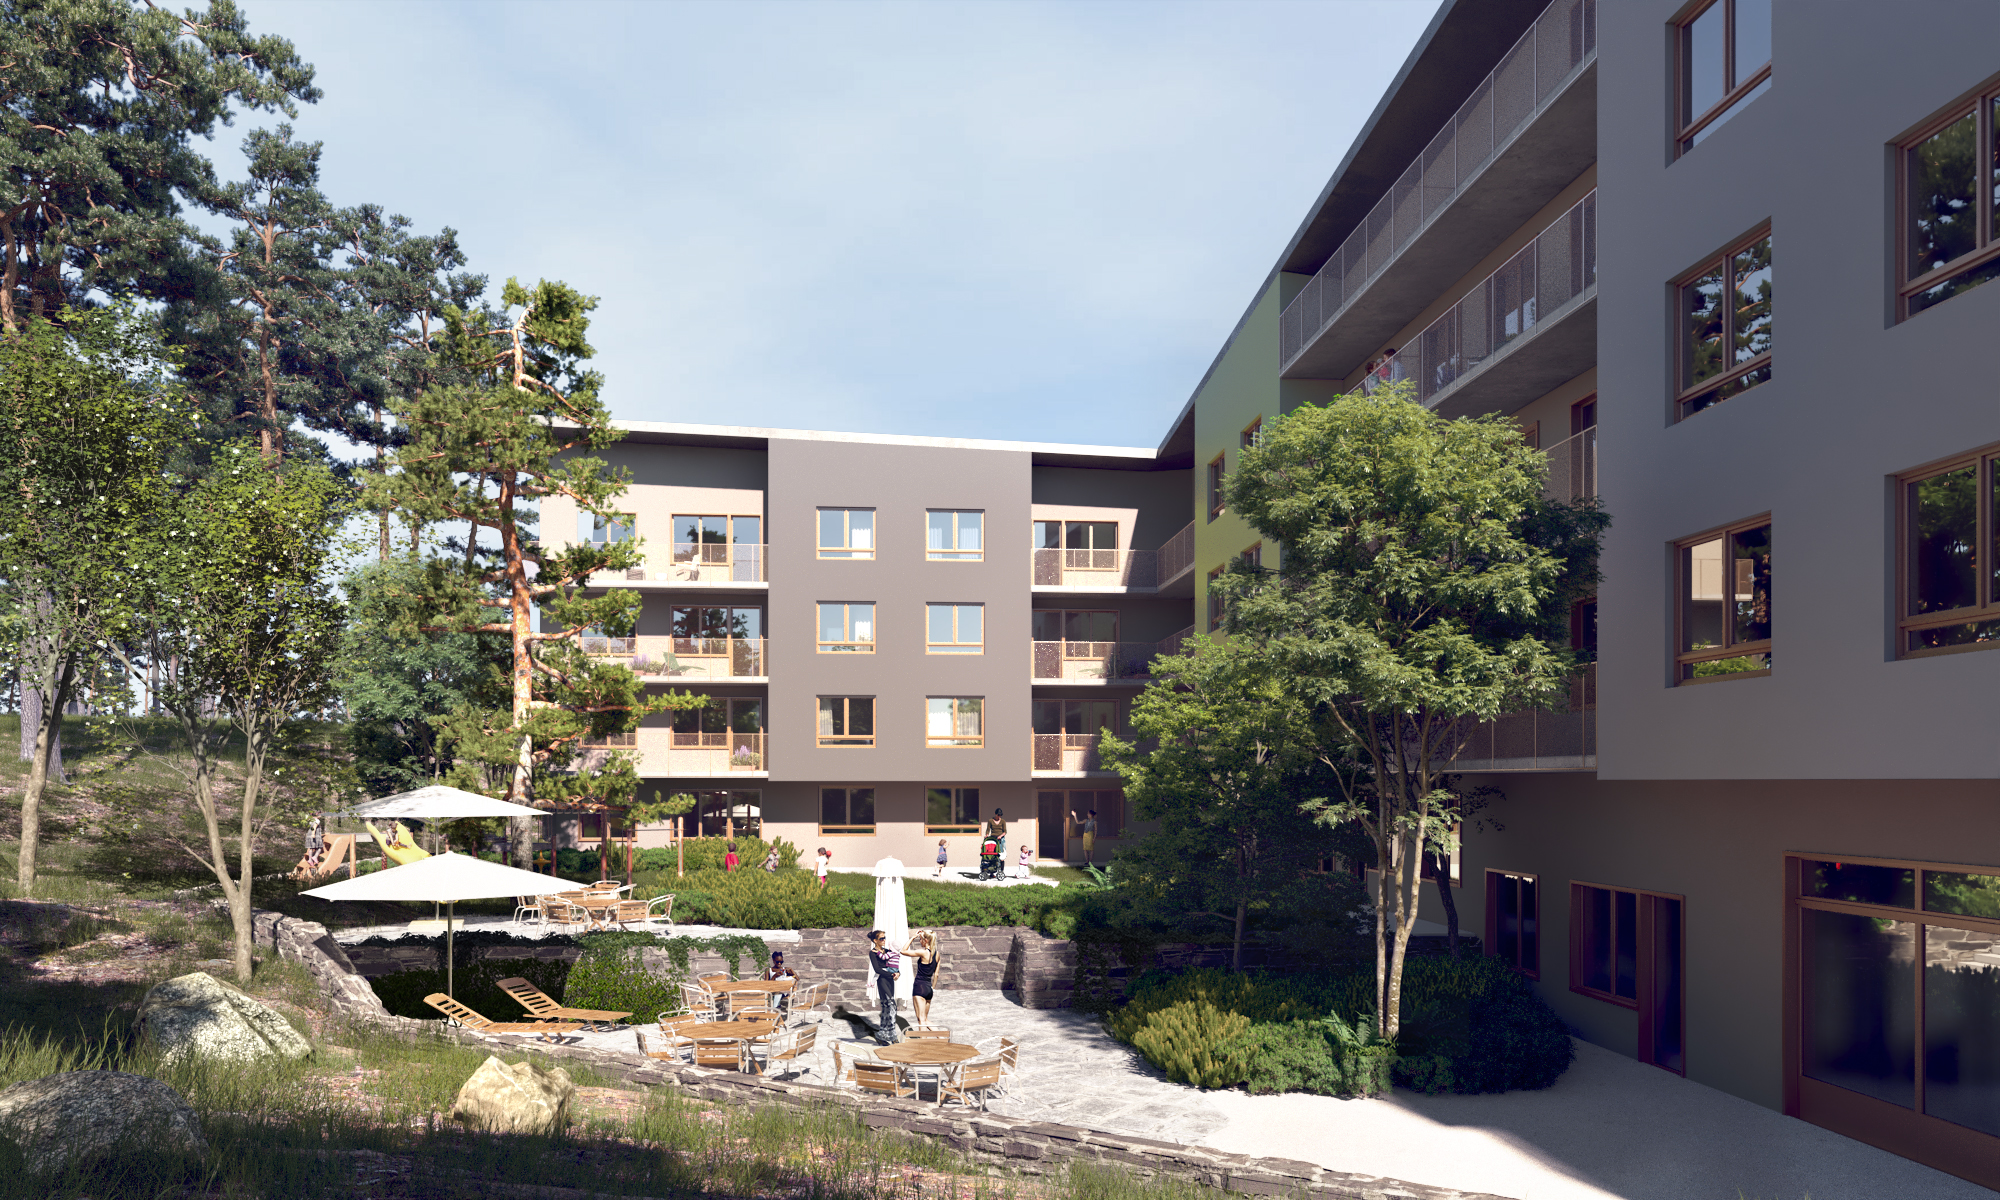 Bostäder i Skärholmsdalen, SKB och Nyréns Arkitektkontor